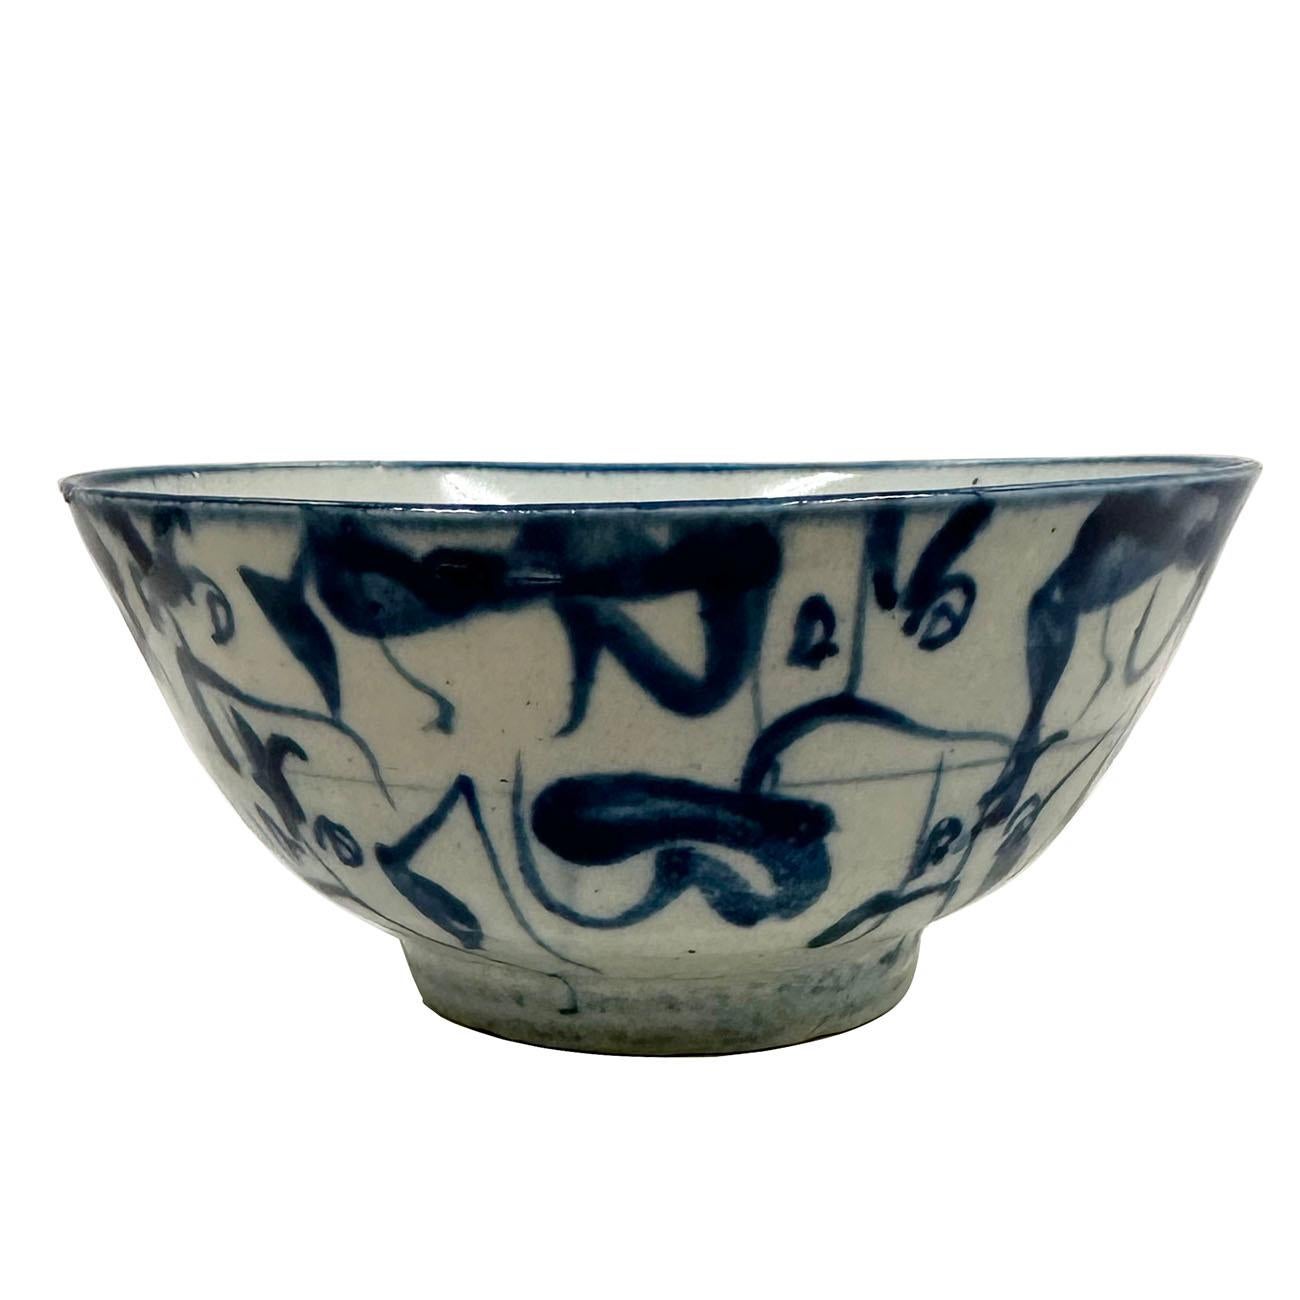 Il s'agit d'un bol ancien en porcelaine chinoise bleue et blanche. Comme vous pouvez le voir sur les photos, il est en très bon état. Il présente un design unique très soigné. La marque 